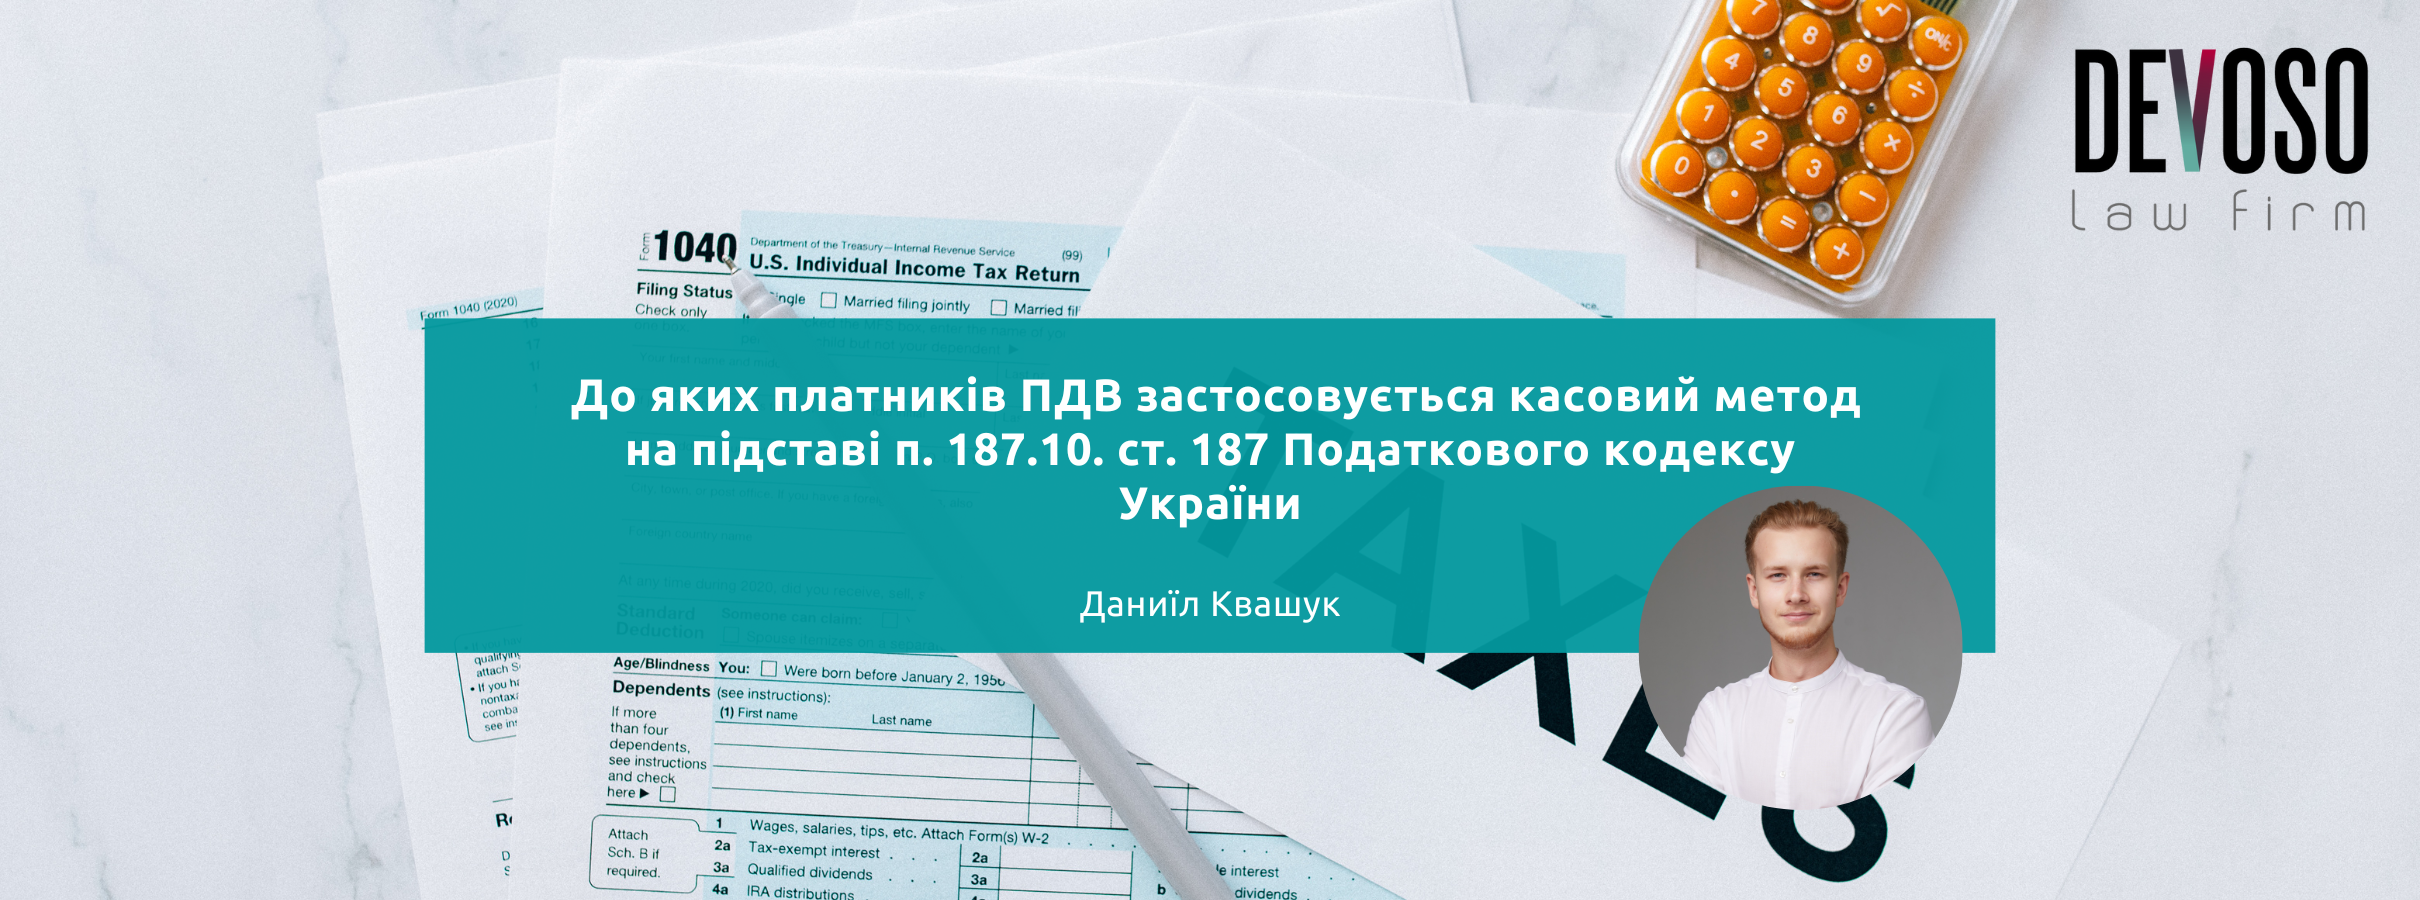 До яких платників ПДВ застосовується касовий метод на підставі п. 187.10. ст. 187 Податкового кодексу України